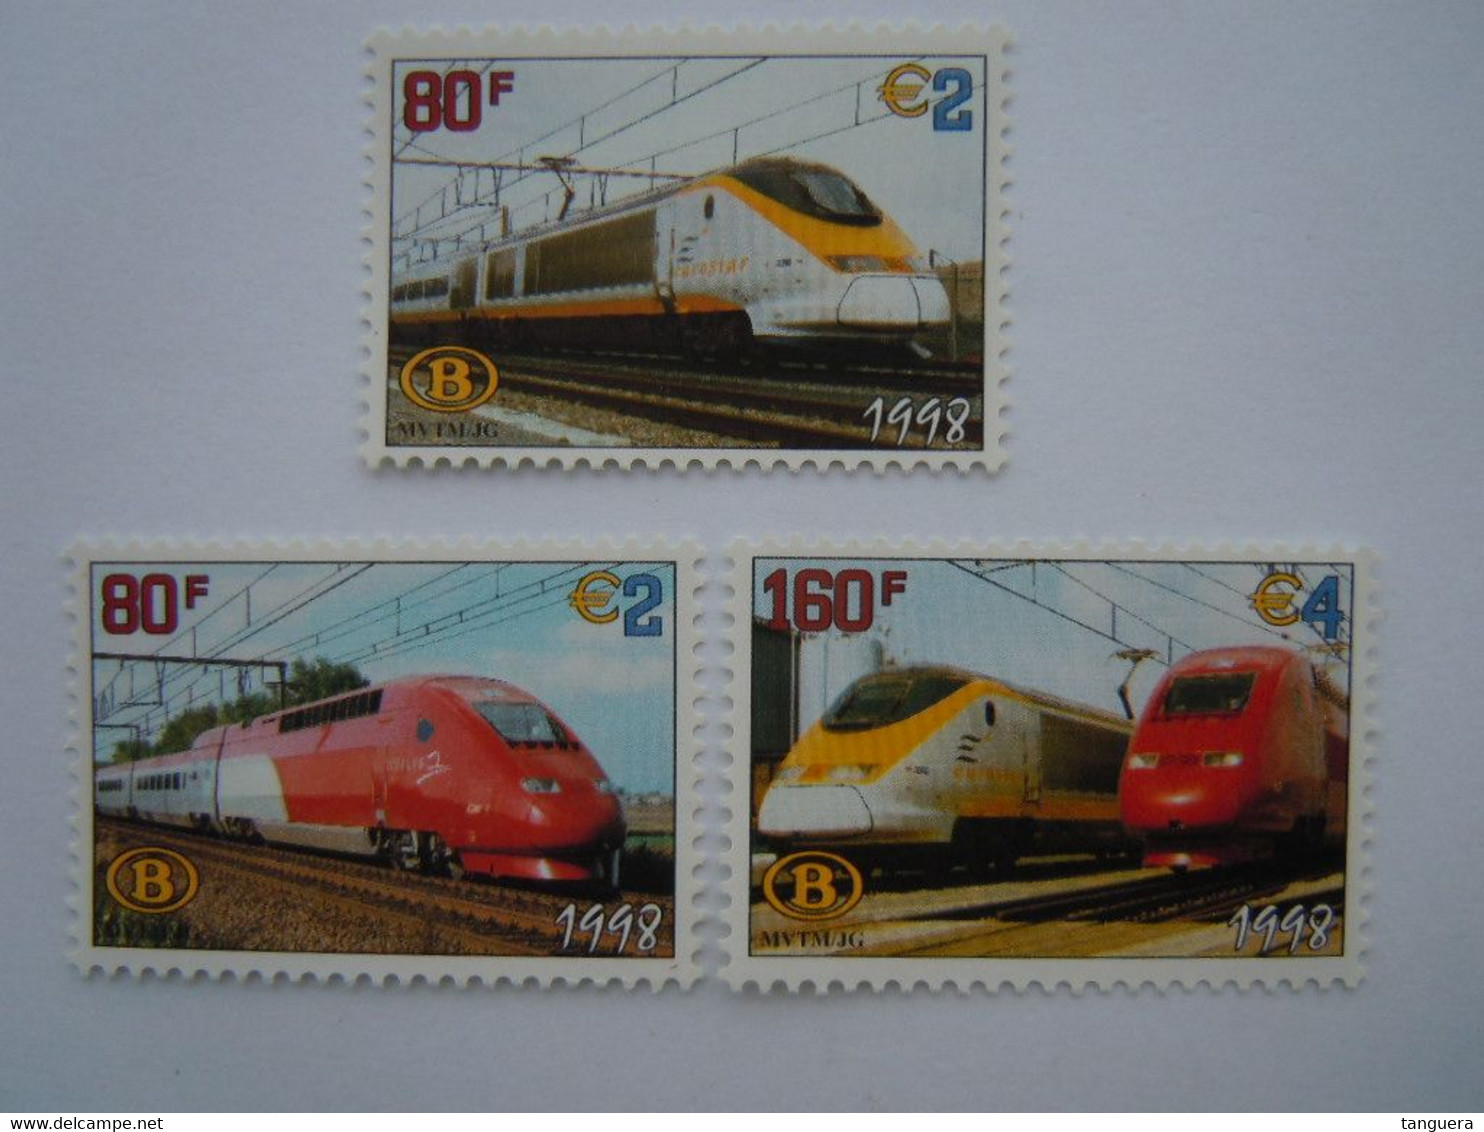 België Belgique 1998 Spoorwegvignet Vignette Chemins De Fer Eurostar Thalys Trein Train TRV6/8 MNH ** - 1996-2013 Vignetten [TRV]